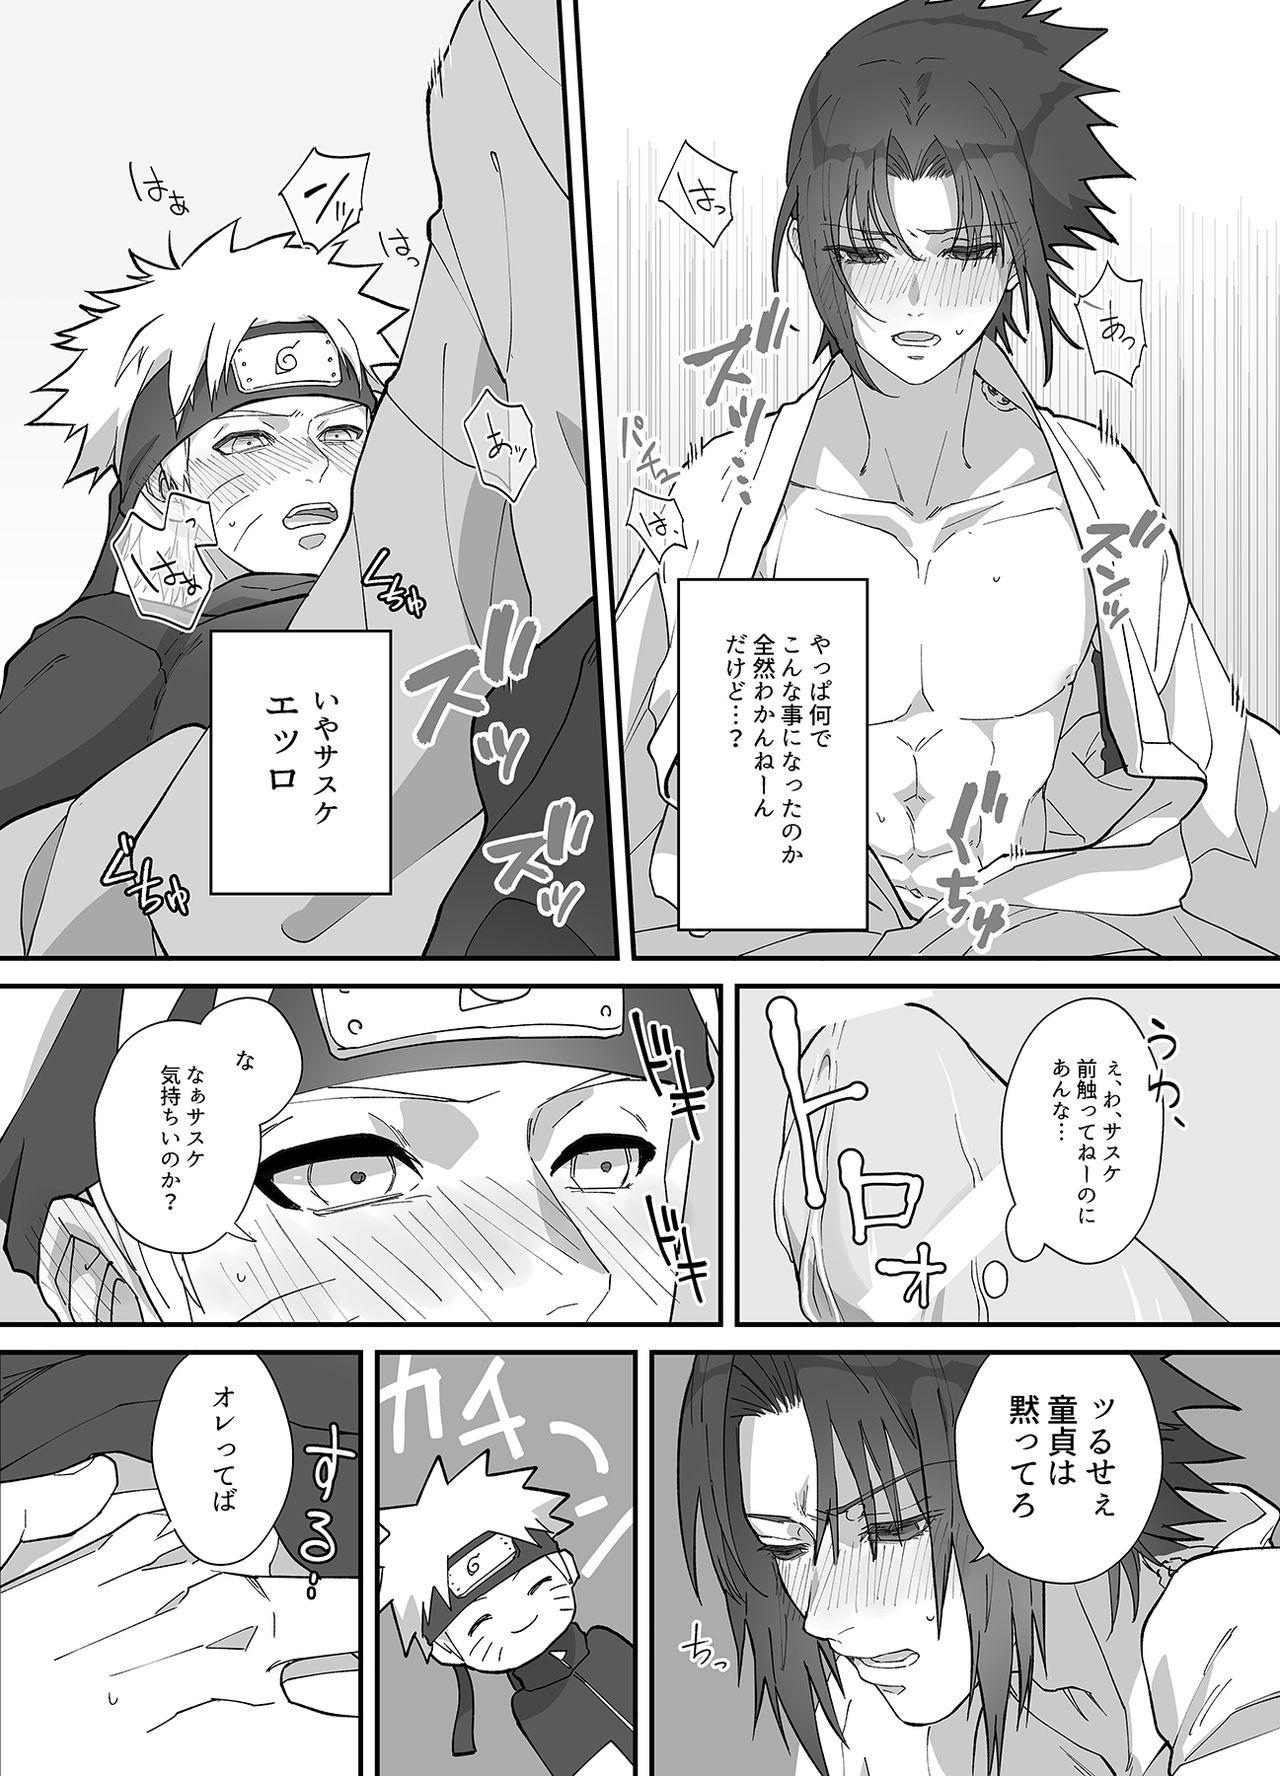 Chubby NaruSasu Only Kaisei Omedetougozaimasu! - Naruto Salope - Page 9